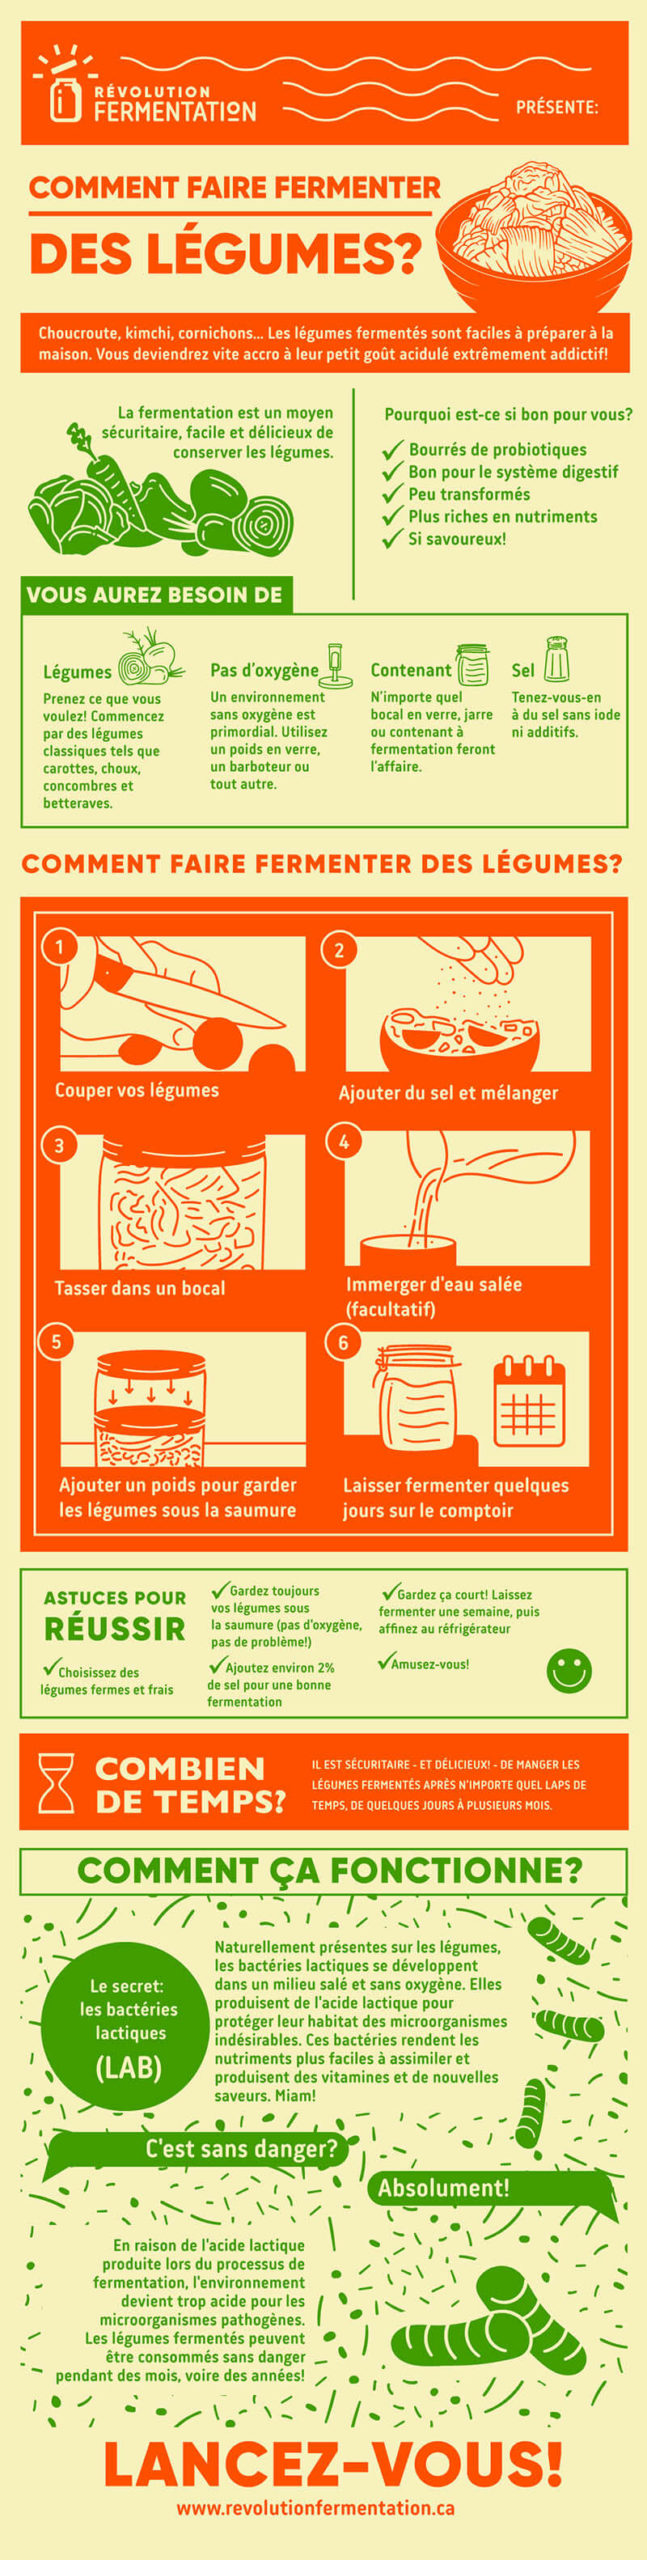 Infographie: Comment faire fermenter des légumes?